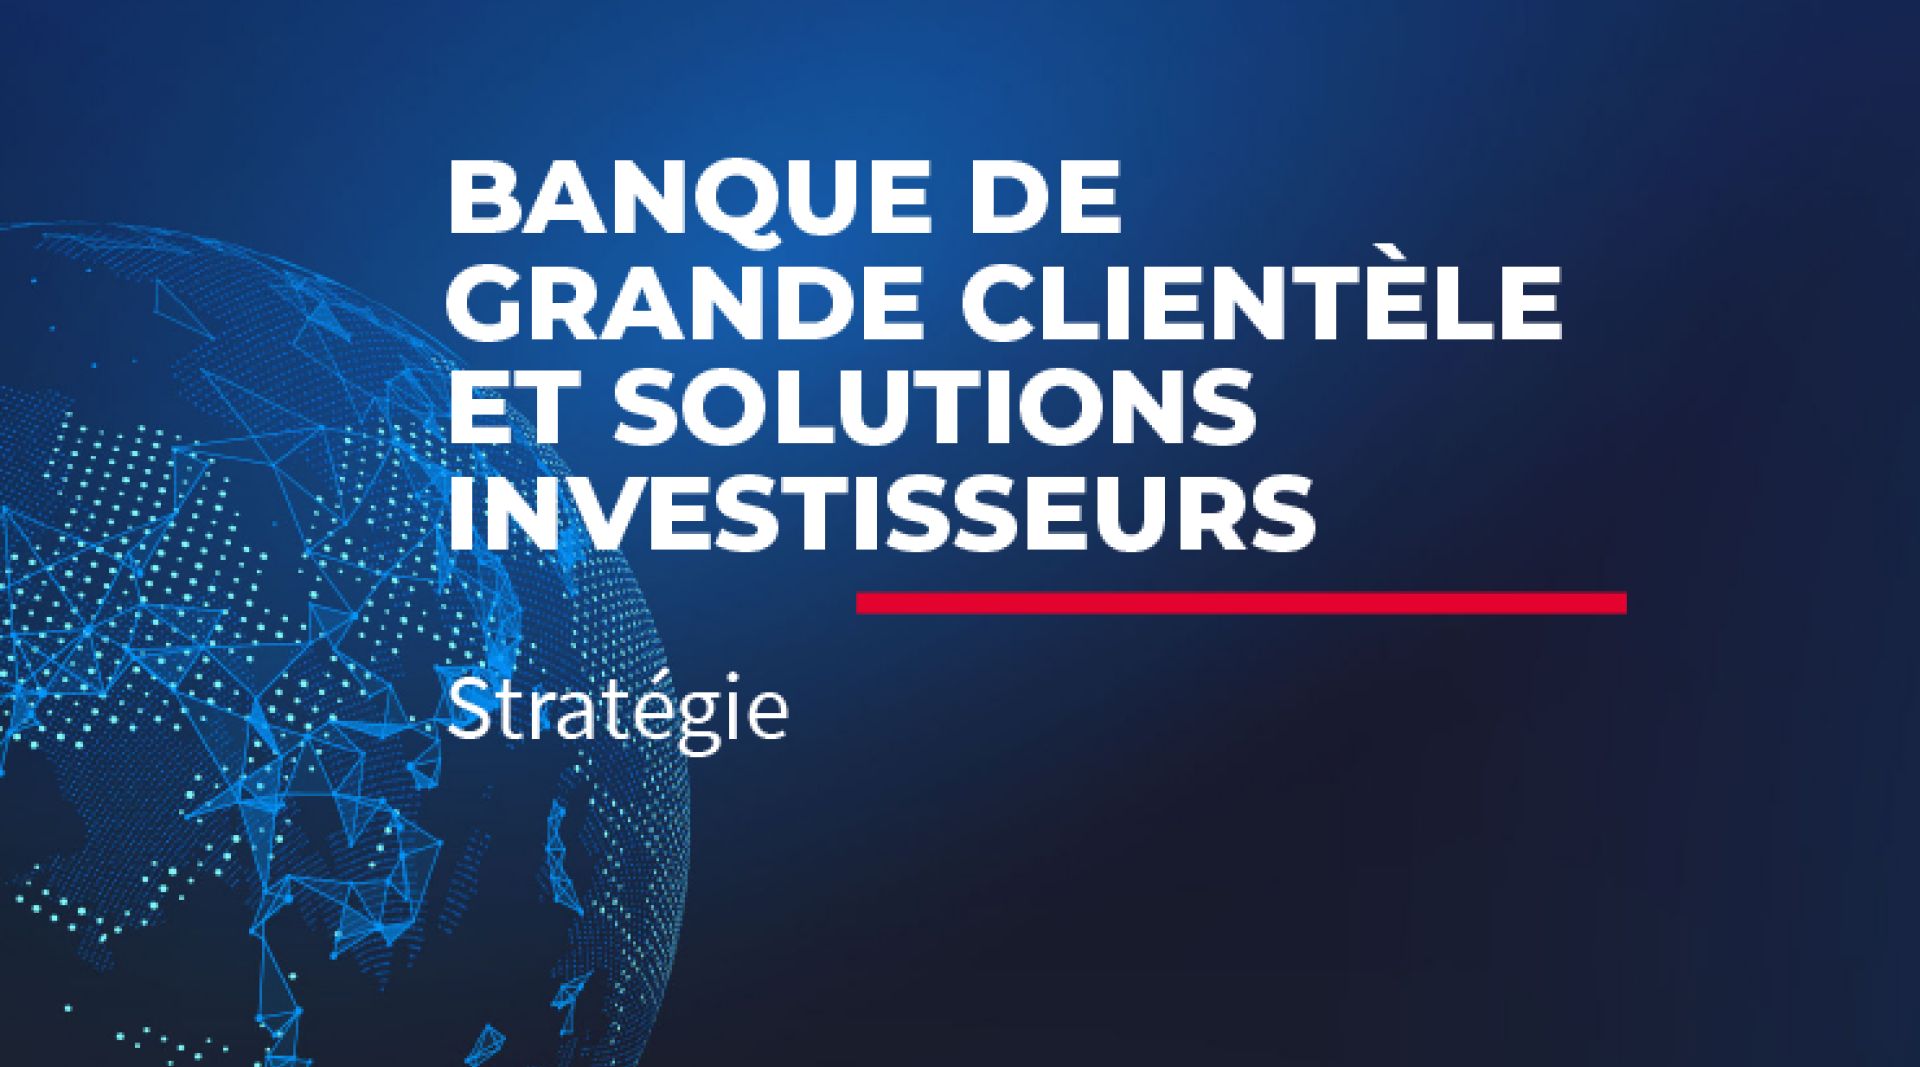 Banque de grande clientèle et solutions investisseurs - Stratégie